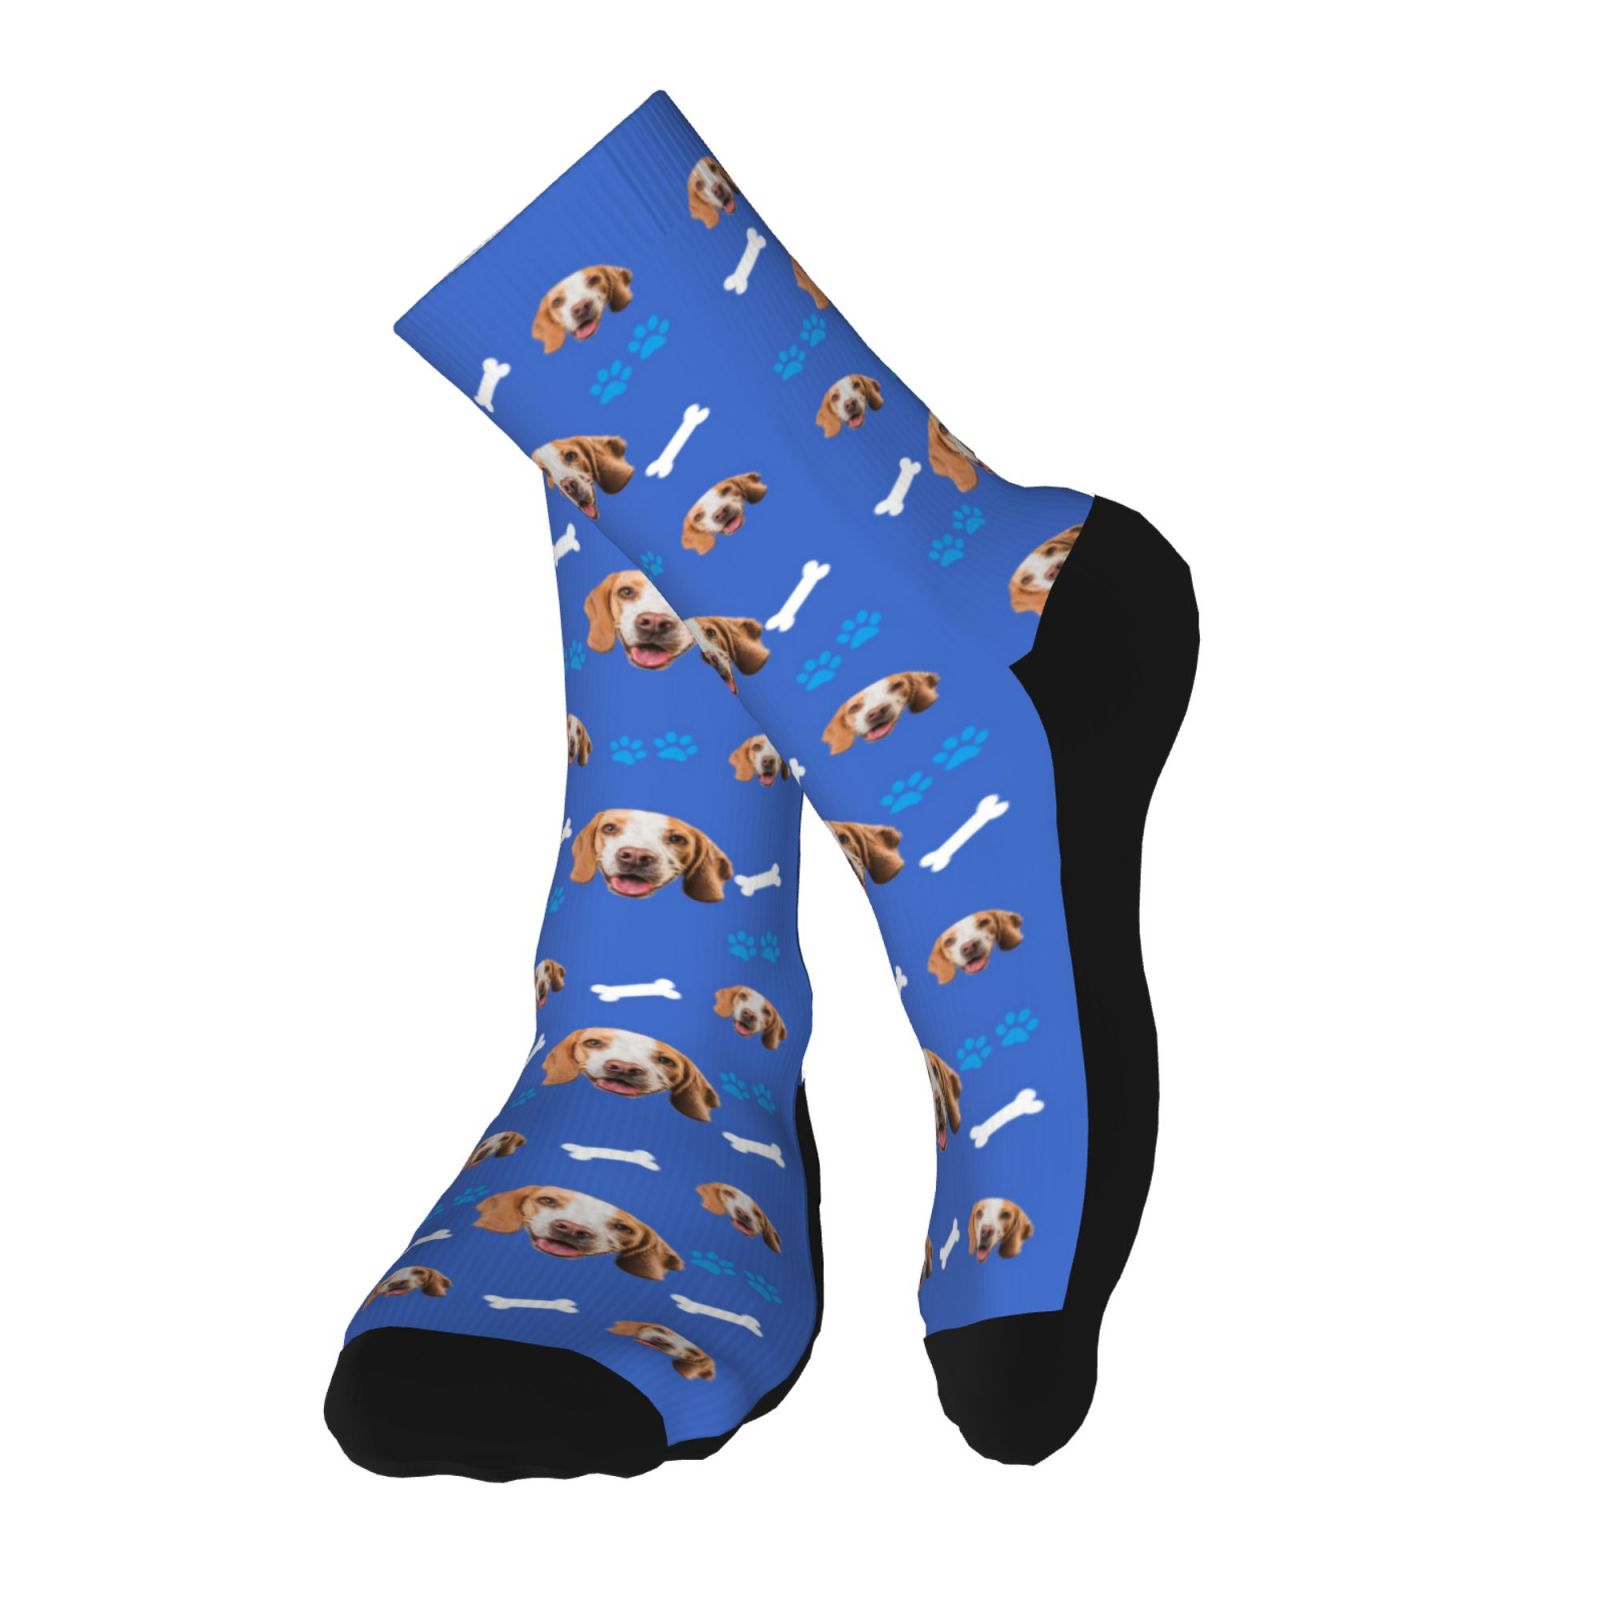 Custom Face Socks for Men and Women, Dog Paws and Bones Animal Face Socks